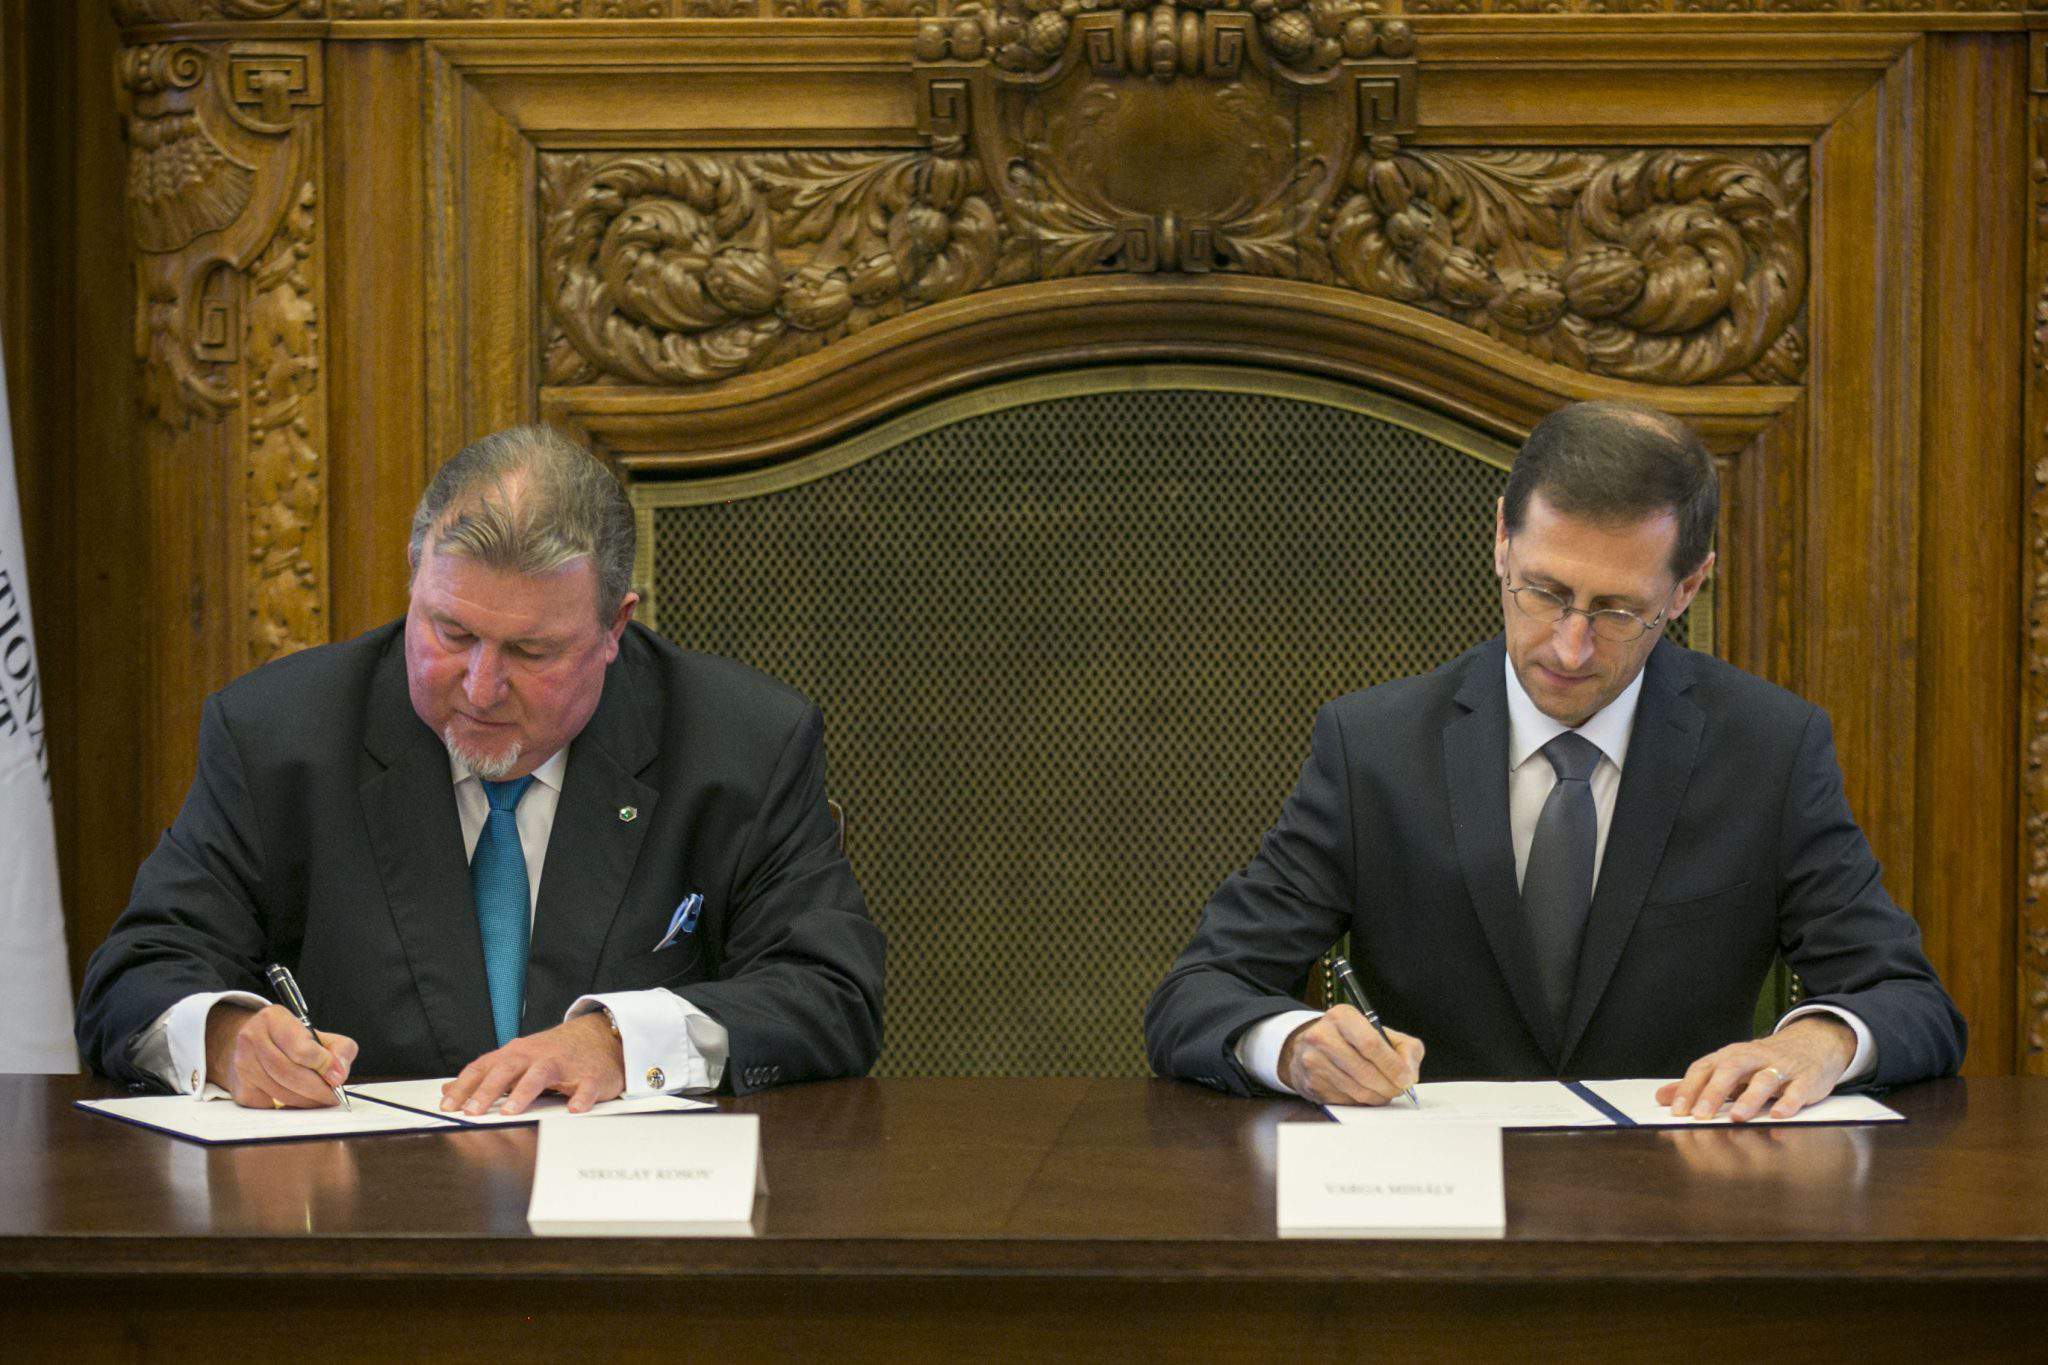 الاتفاق المبدئي لبنك الاستثمار IIB و Varga لجلب المكتب الإقليمي إلى المجر